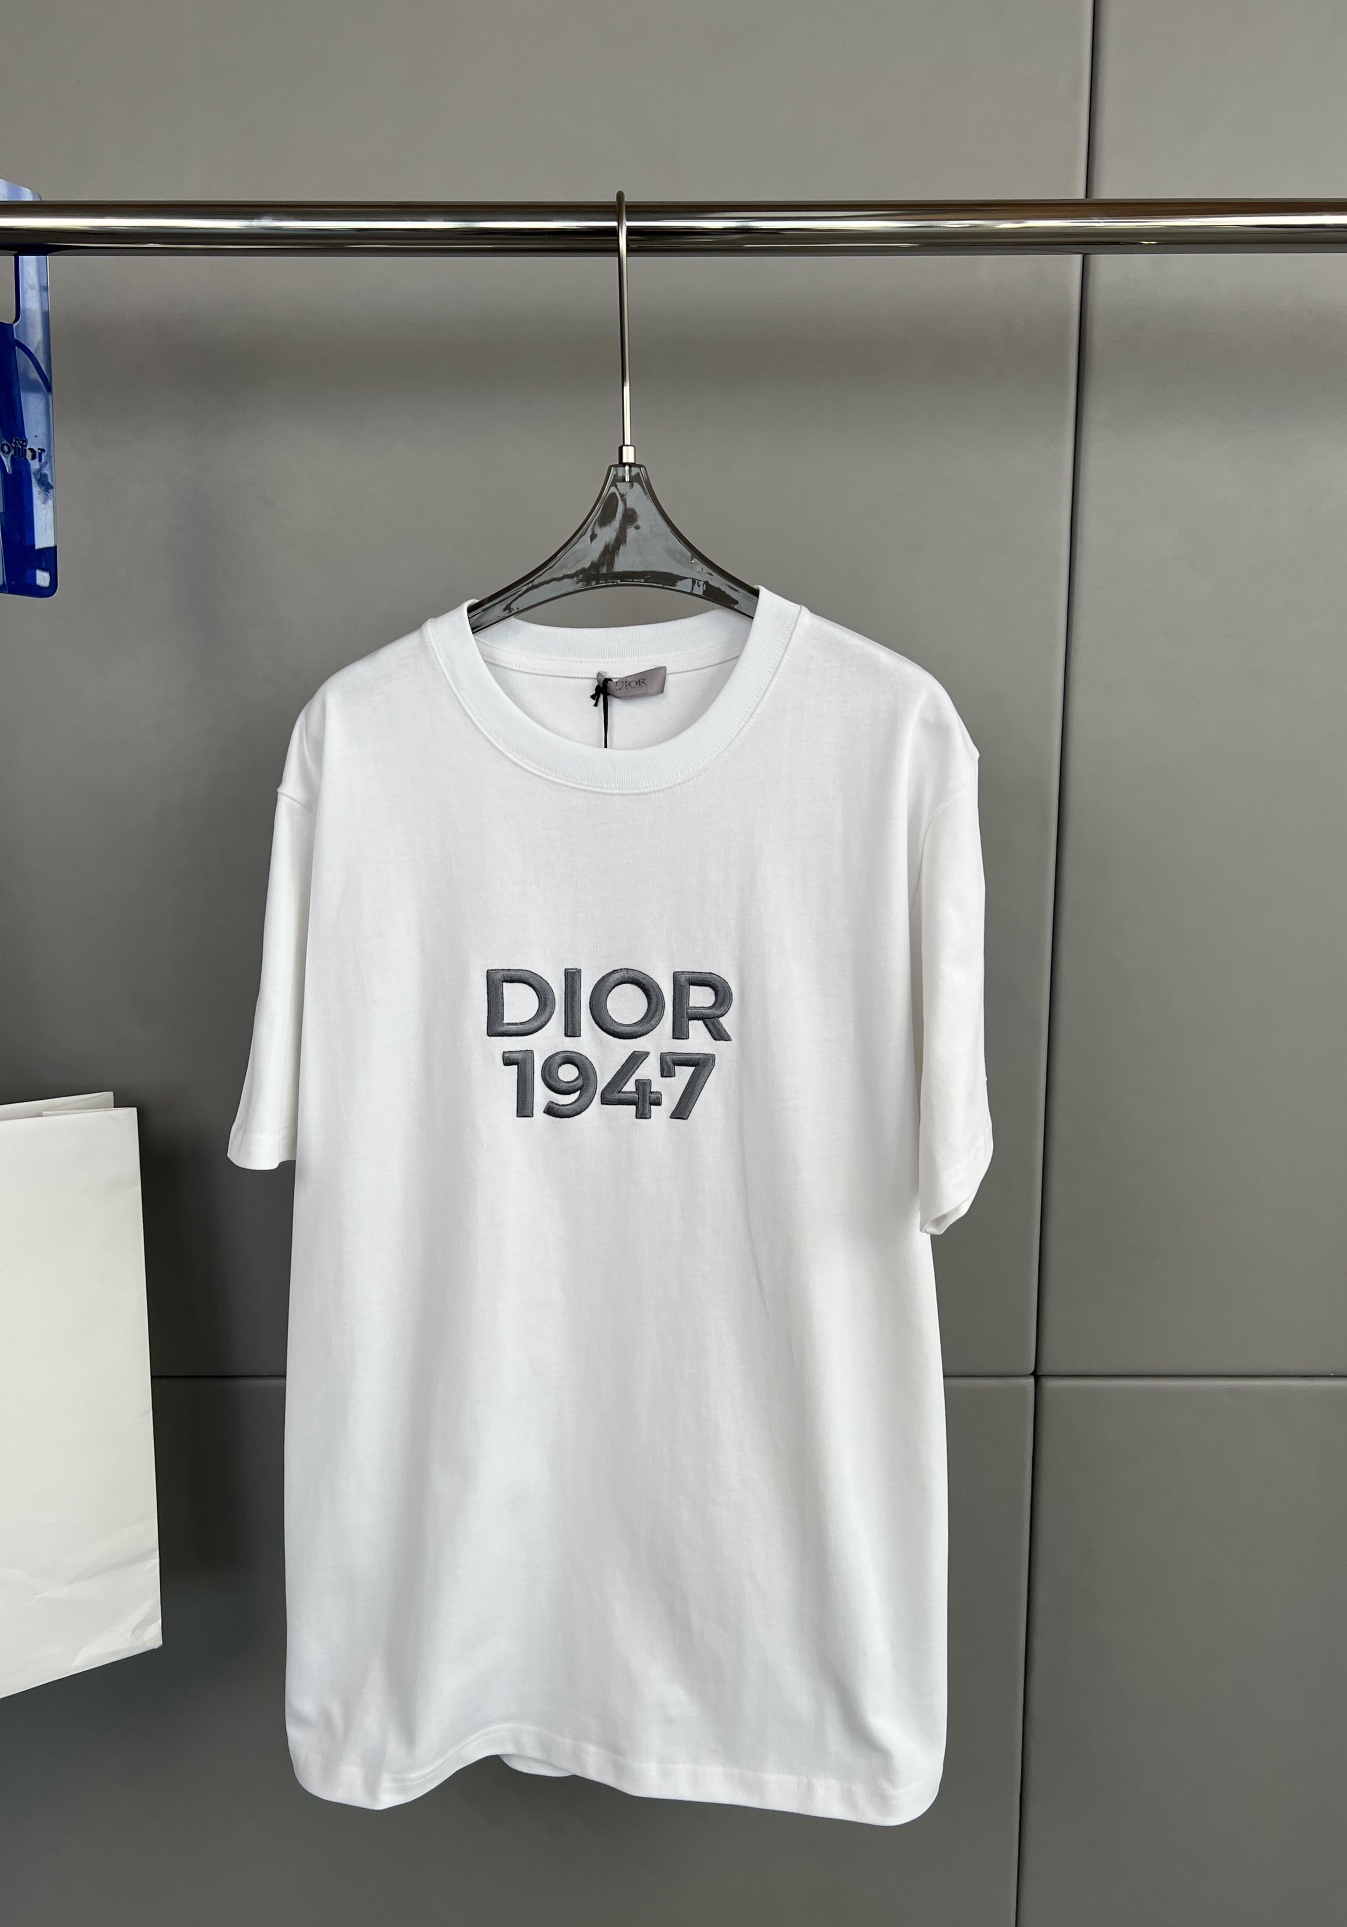 Dio*r 24春夏新款 刺绣针织棉布圆领T恤、前胸字母品牌logo刺绣、款式简单简洁、宽松版型、男女同款码数S M L XL